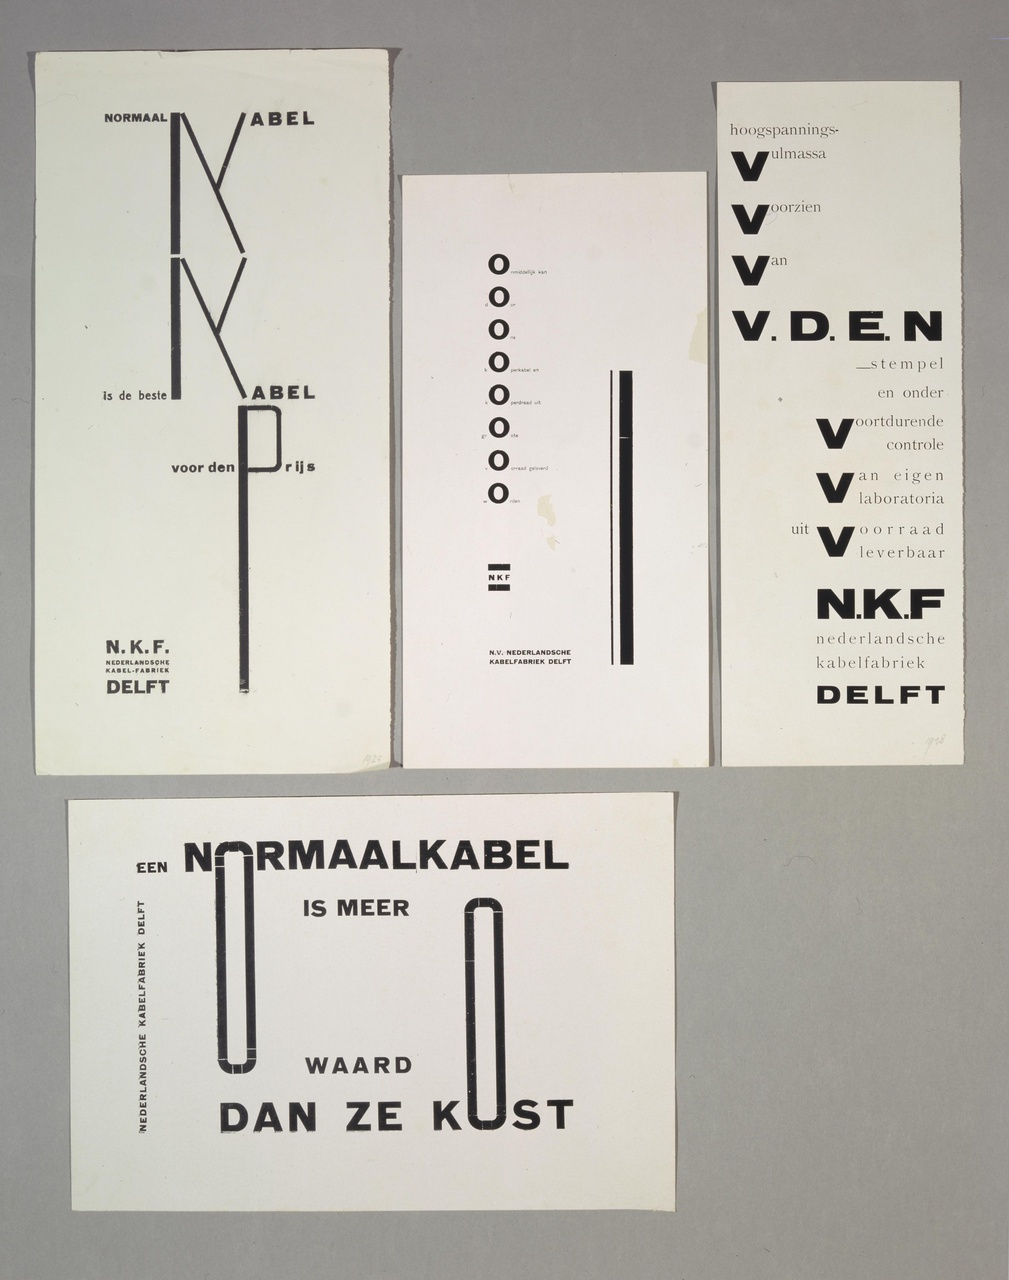 Advertenties voor de Nederlandse Kabelfabriek, Delft